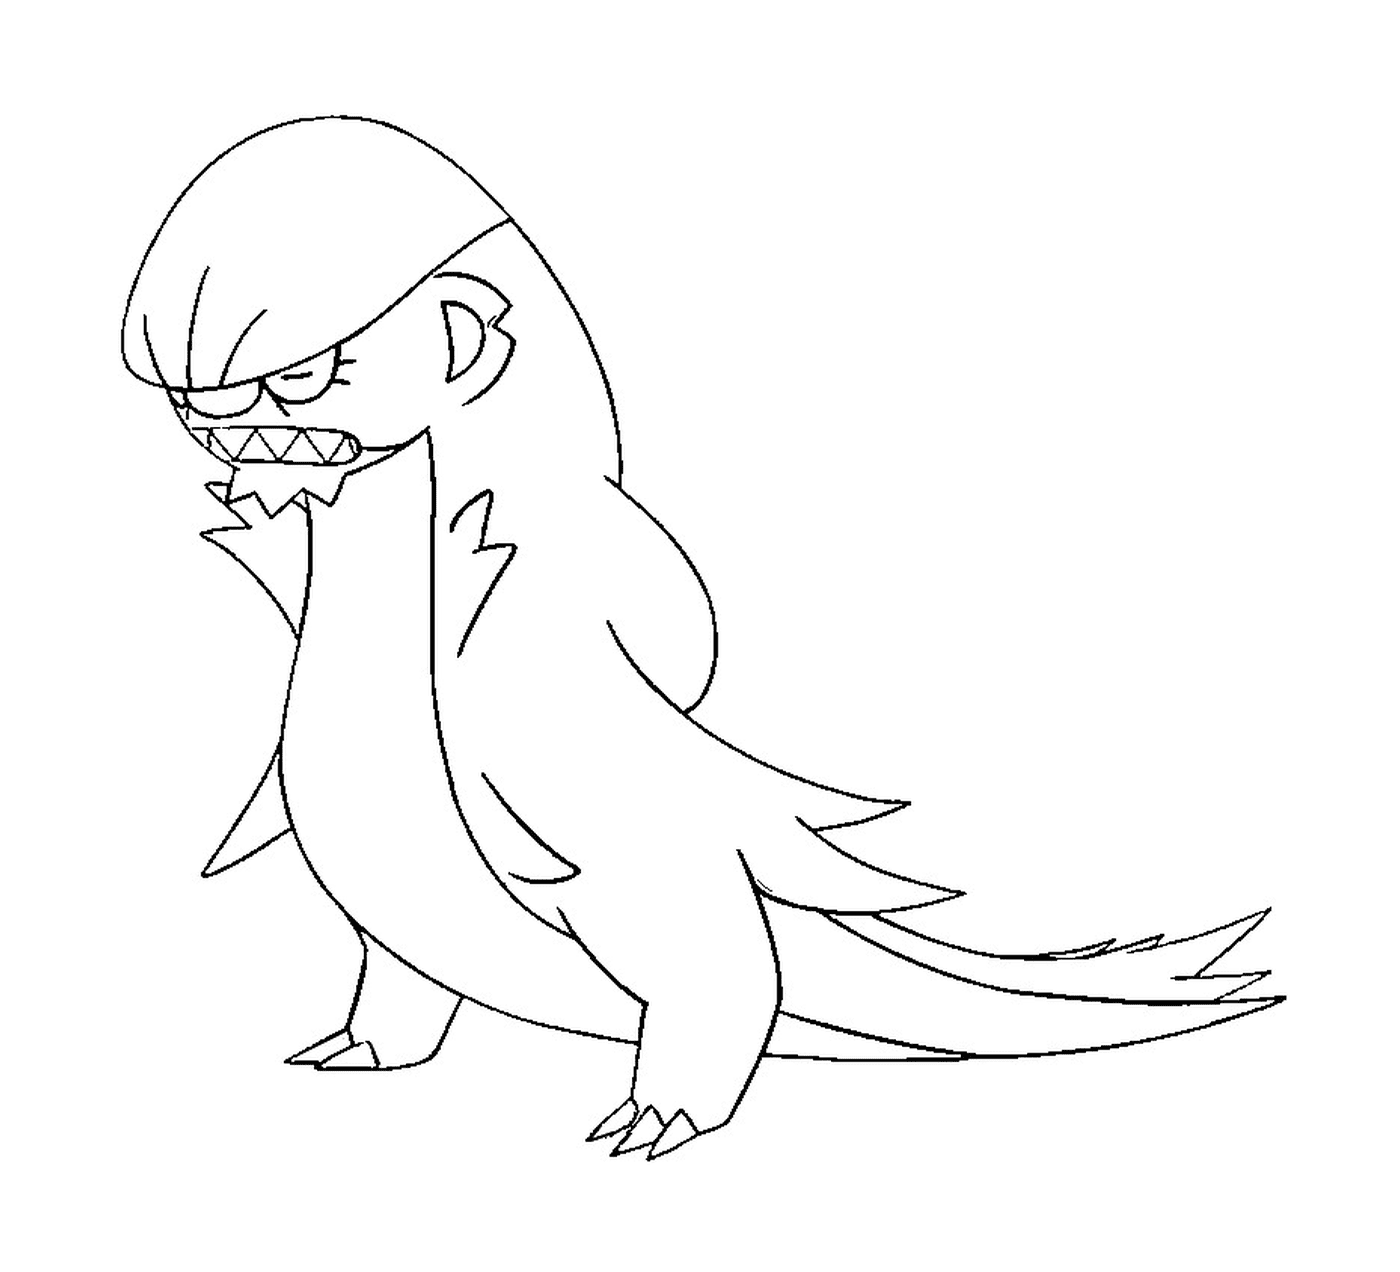  Argous, un uccello dall'aria arrabbiata 